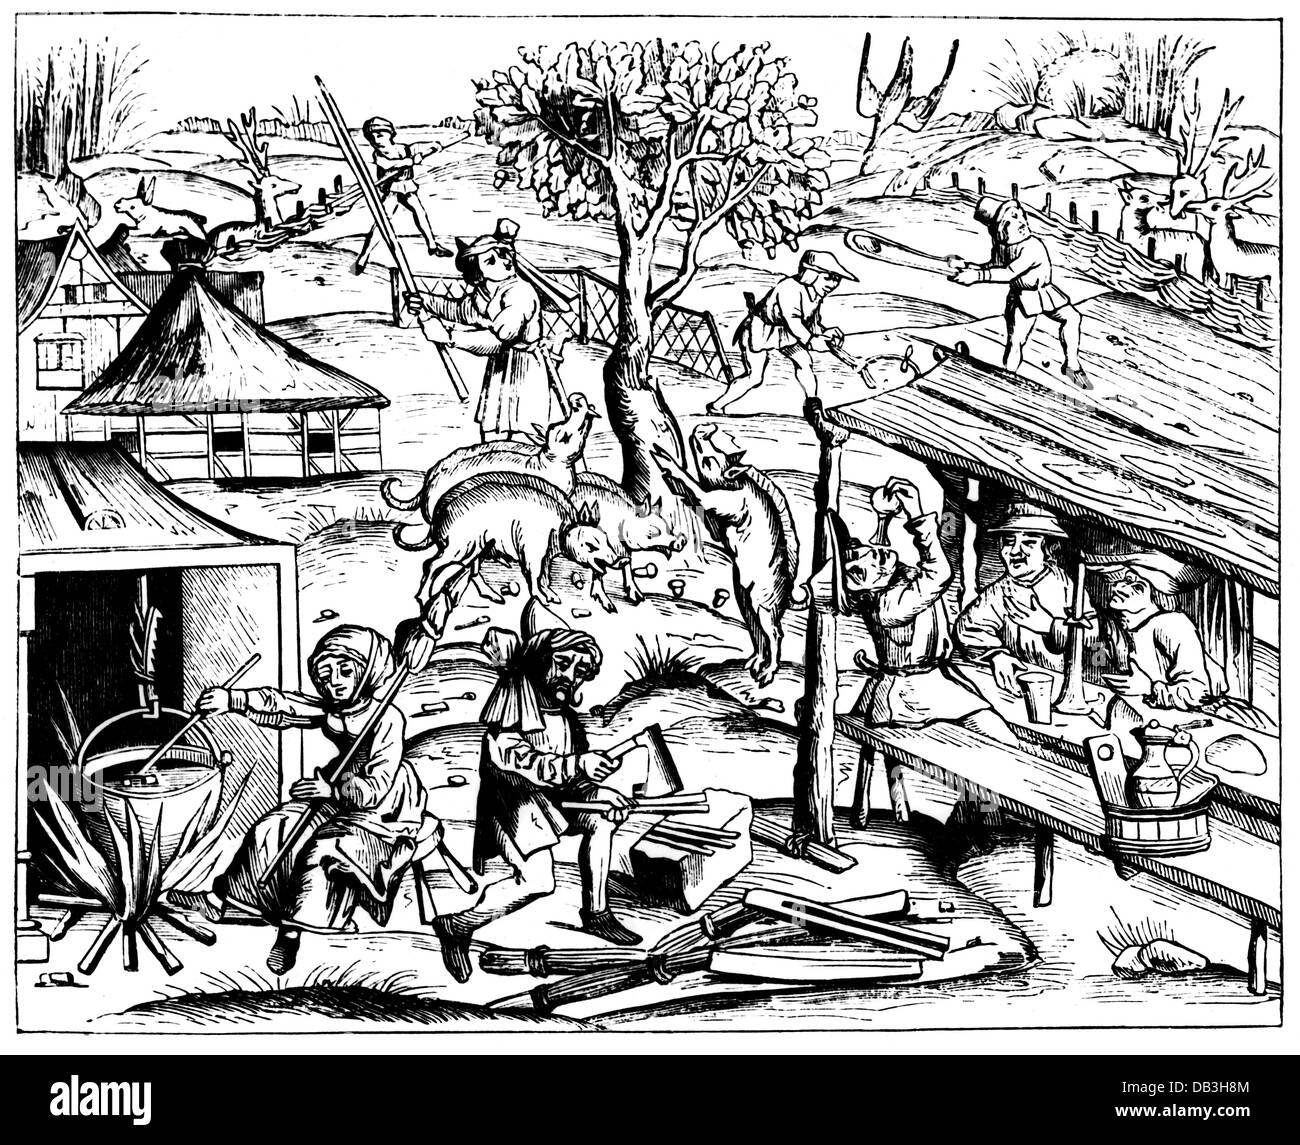 Agricultura, vida rural, corte de madera de una edición de las obras de Virgil, Lyon, 1517, Derechos adicionales-Clearences-no disponible Foto de stock